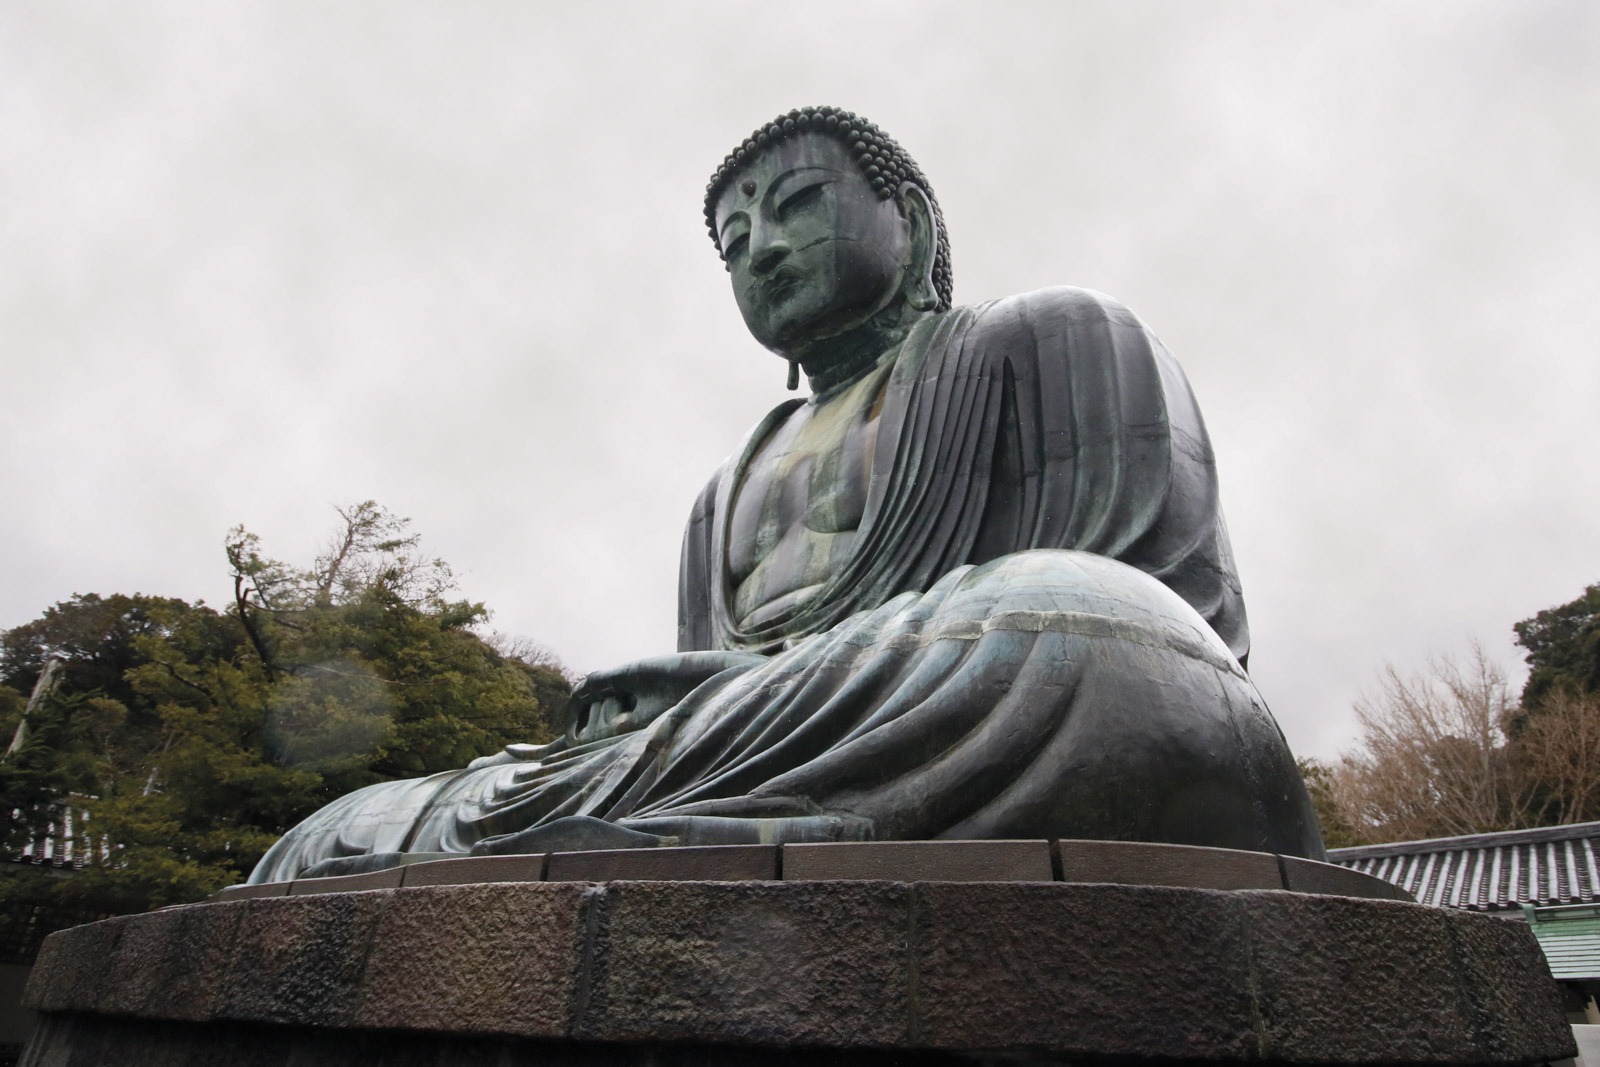 Great Buddha of Kamakura